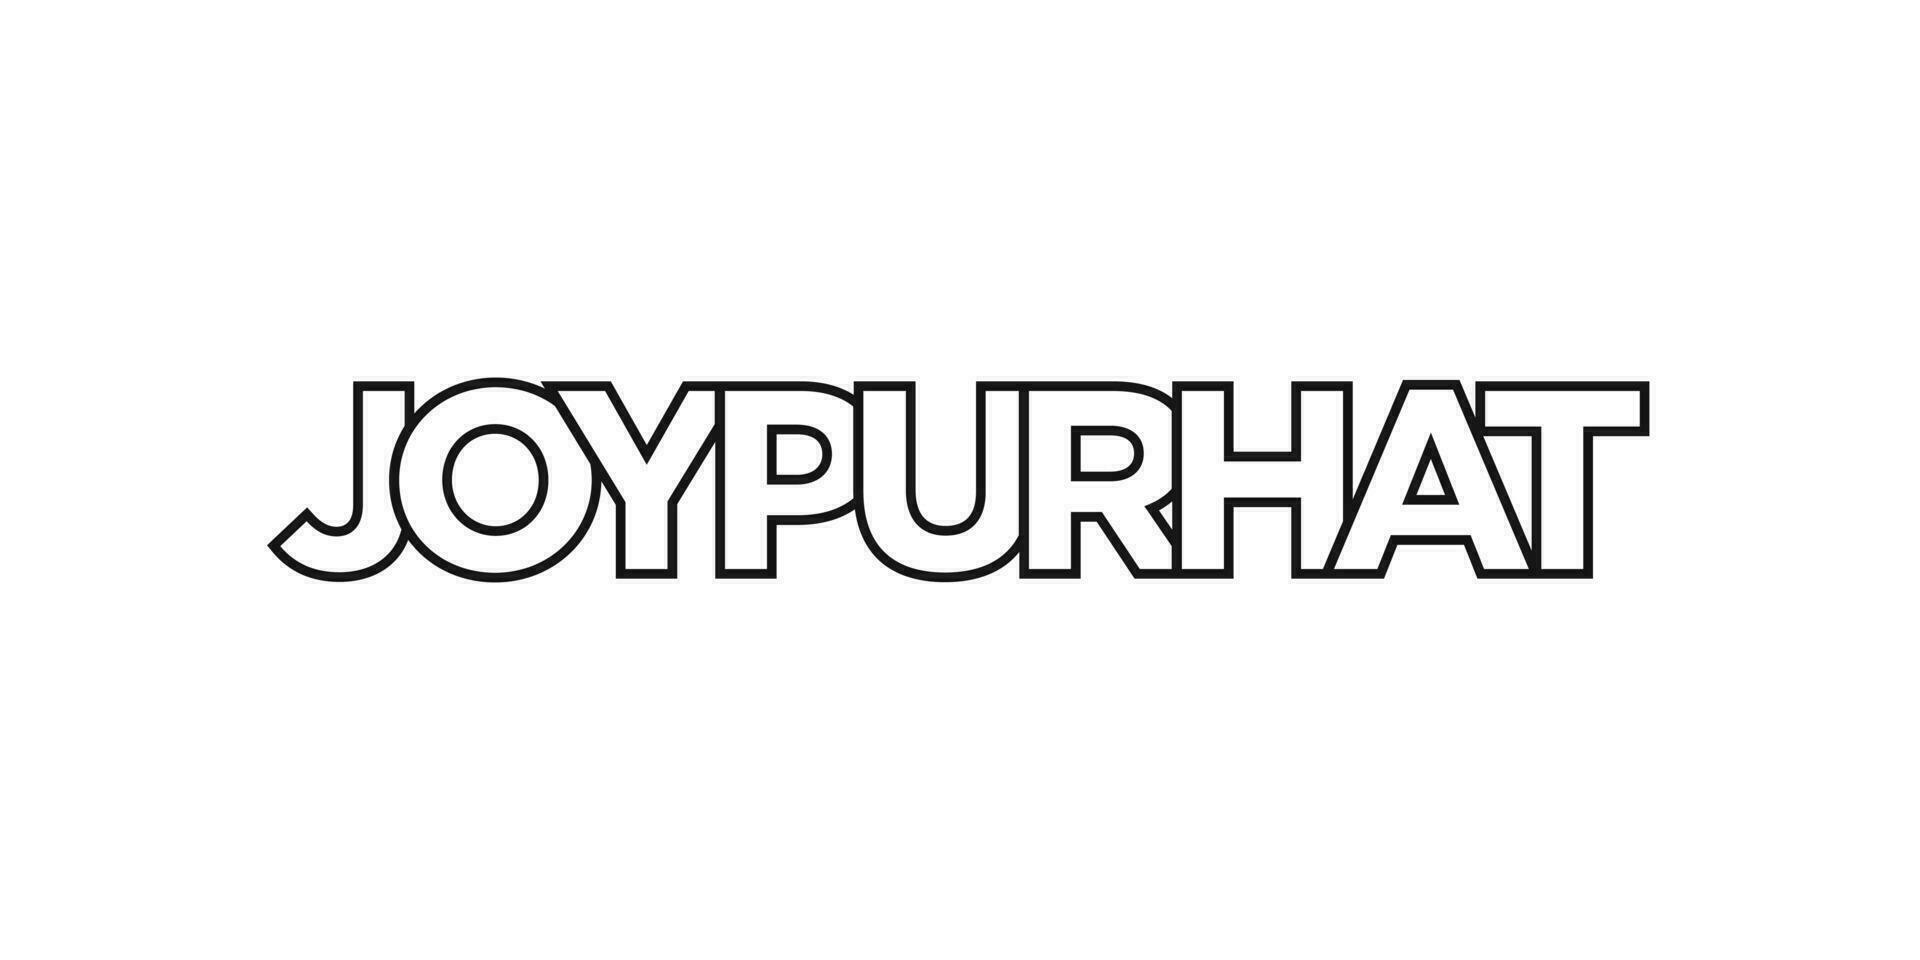 joypurhat dentro a Bangladesh emblema. a Projeto características uma geométrico estilo, vetor ilustração com negrito tipografia dentro uma moderno Fonte. a gráfico slogan rotulação.